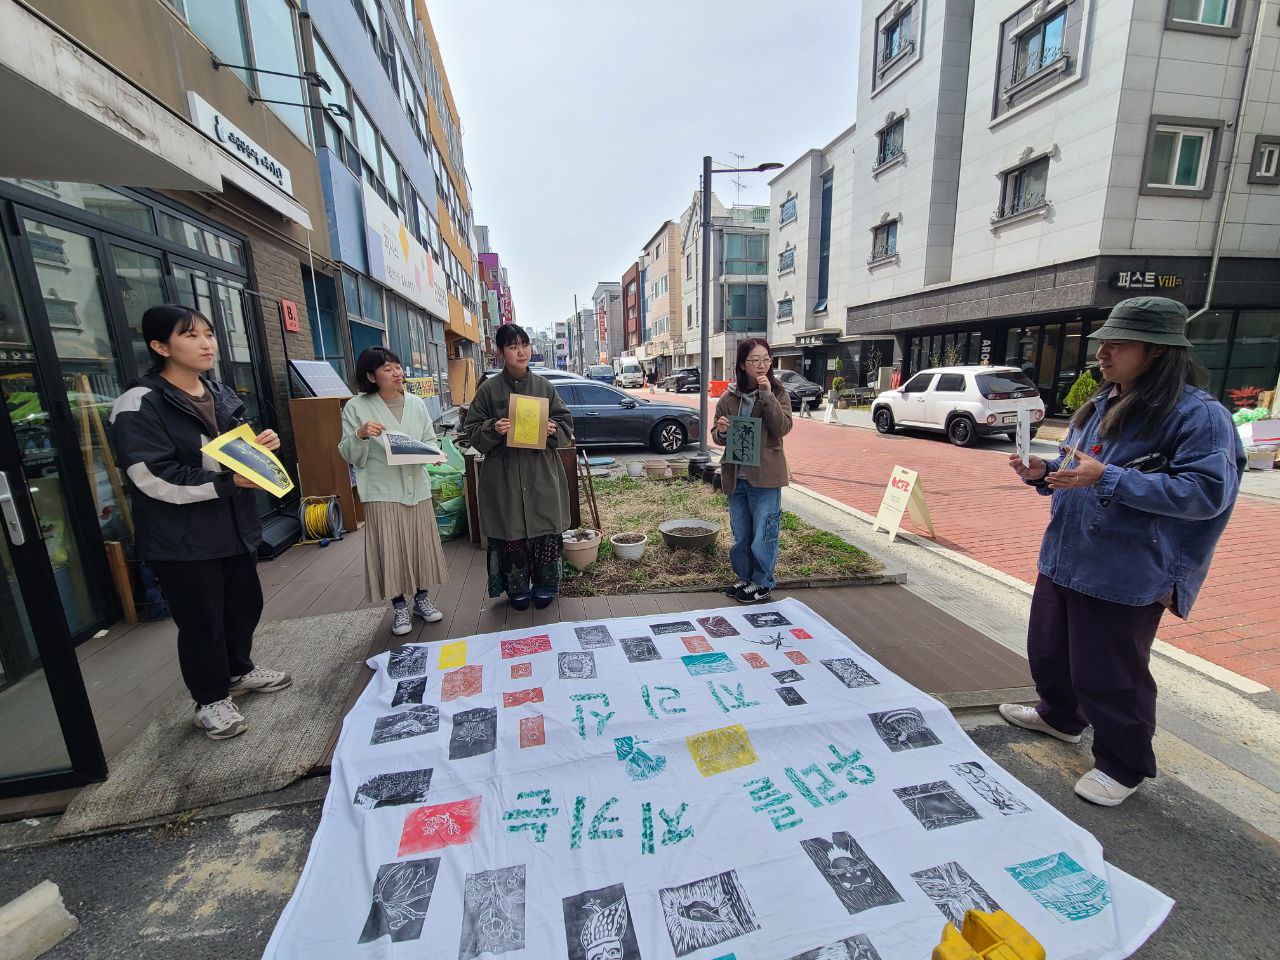 길 한켠 바닥에 '우리를 지키는 지리산'이라는 문구와 여러색의 판화가 찍힌 큰 천이 놓여있고 그 주변에 4명의 사람들이 종이에 찍힌 작은 판화를 들고 서 있다. 